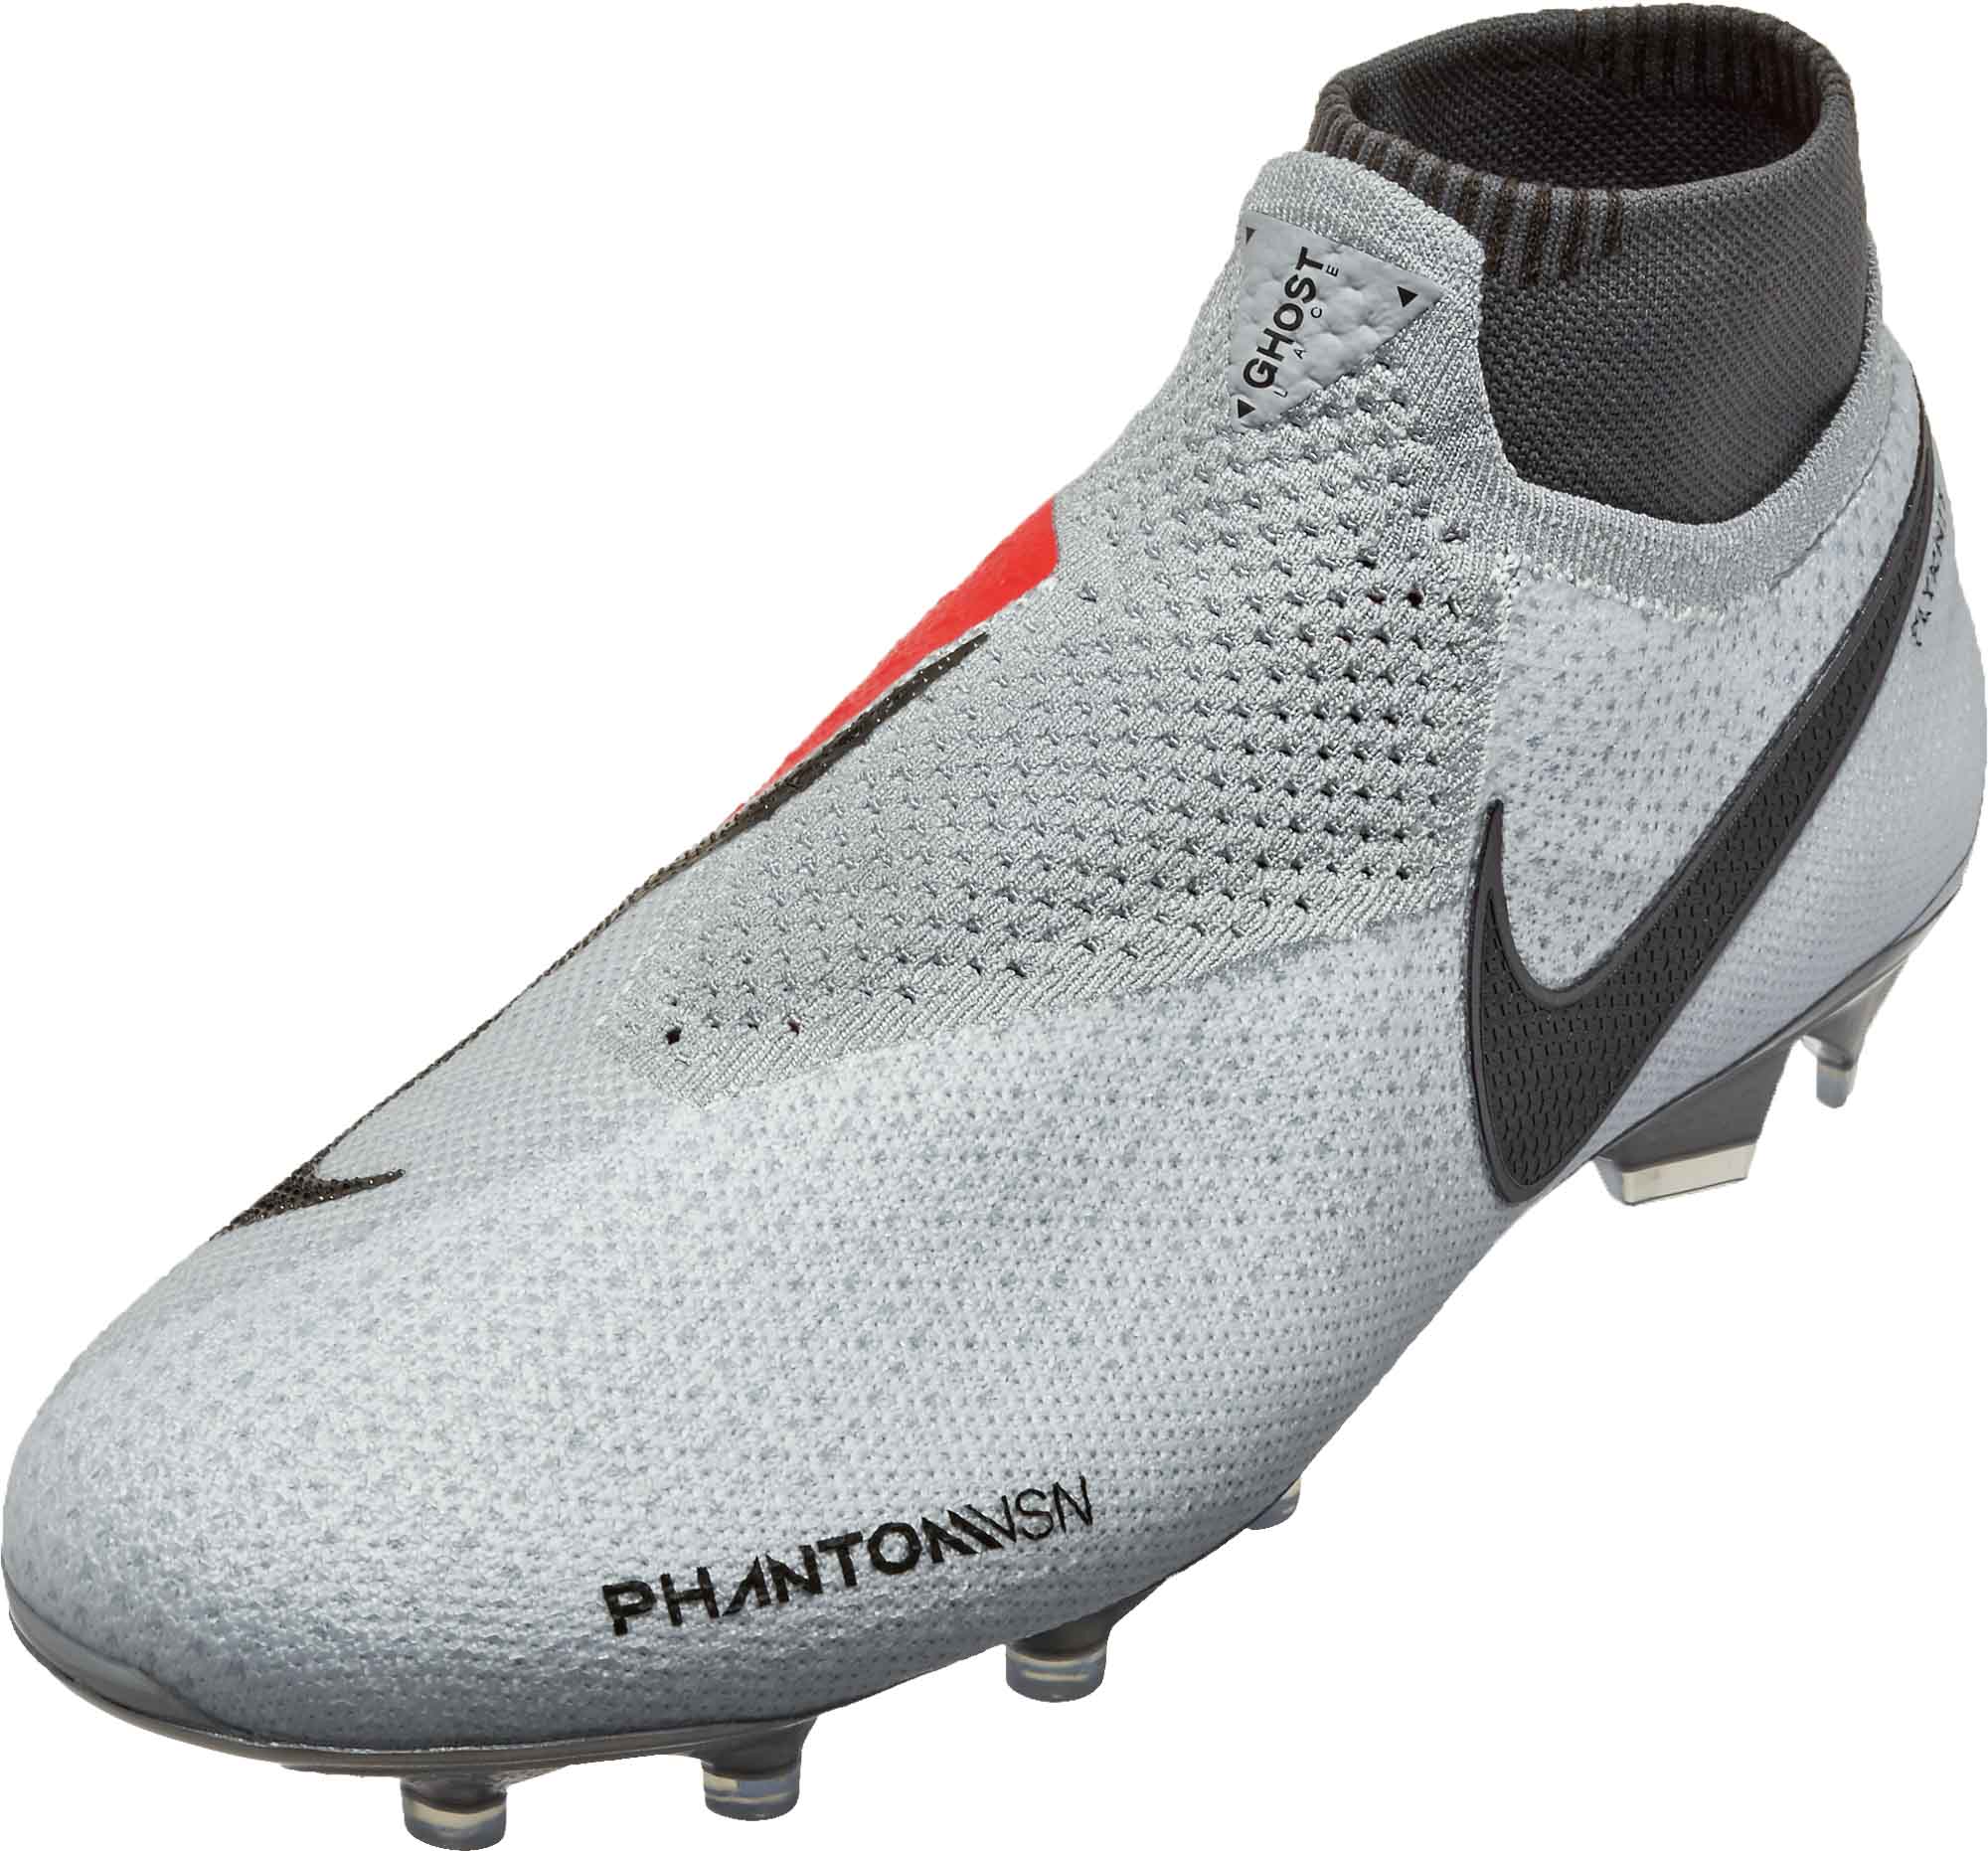 schuifelen Slang Wegversperring Nike Phantom Vision Elite FG - Pure Platinum/Black/Light Crimson/Dark Grey  - Soccer Master